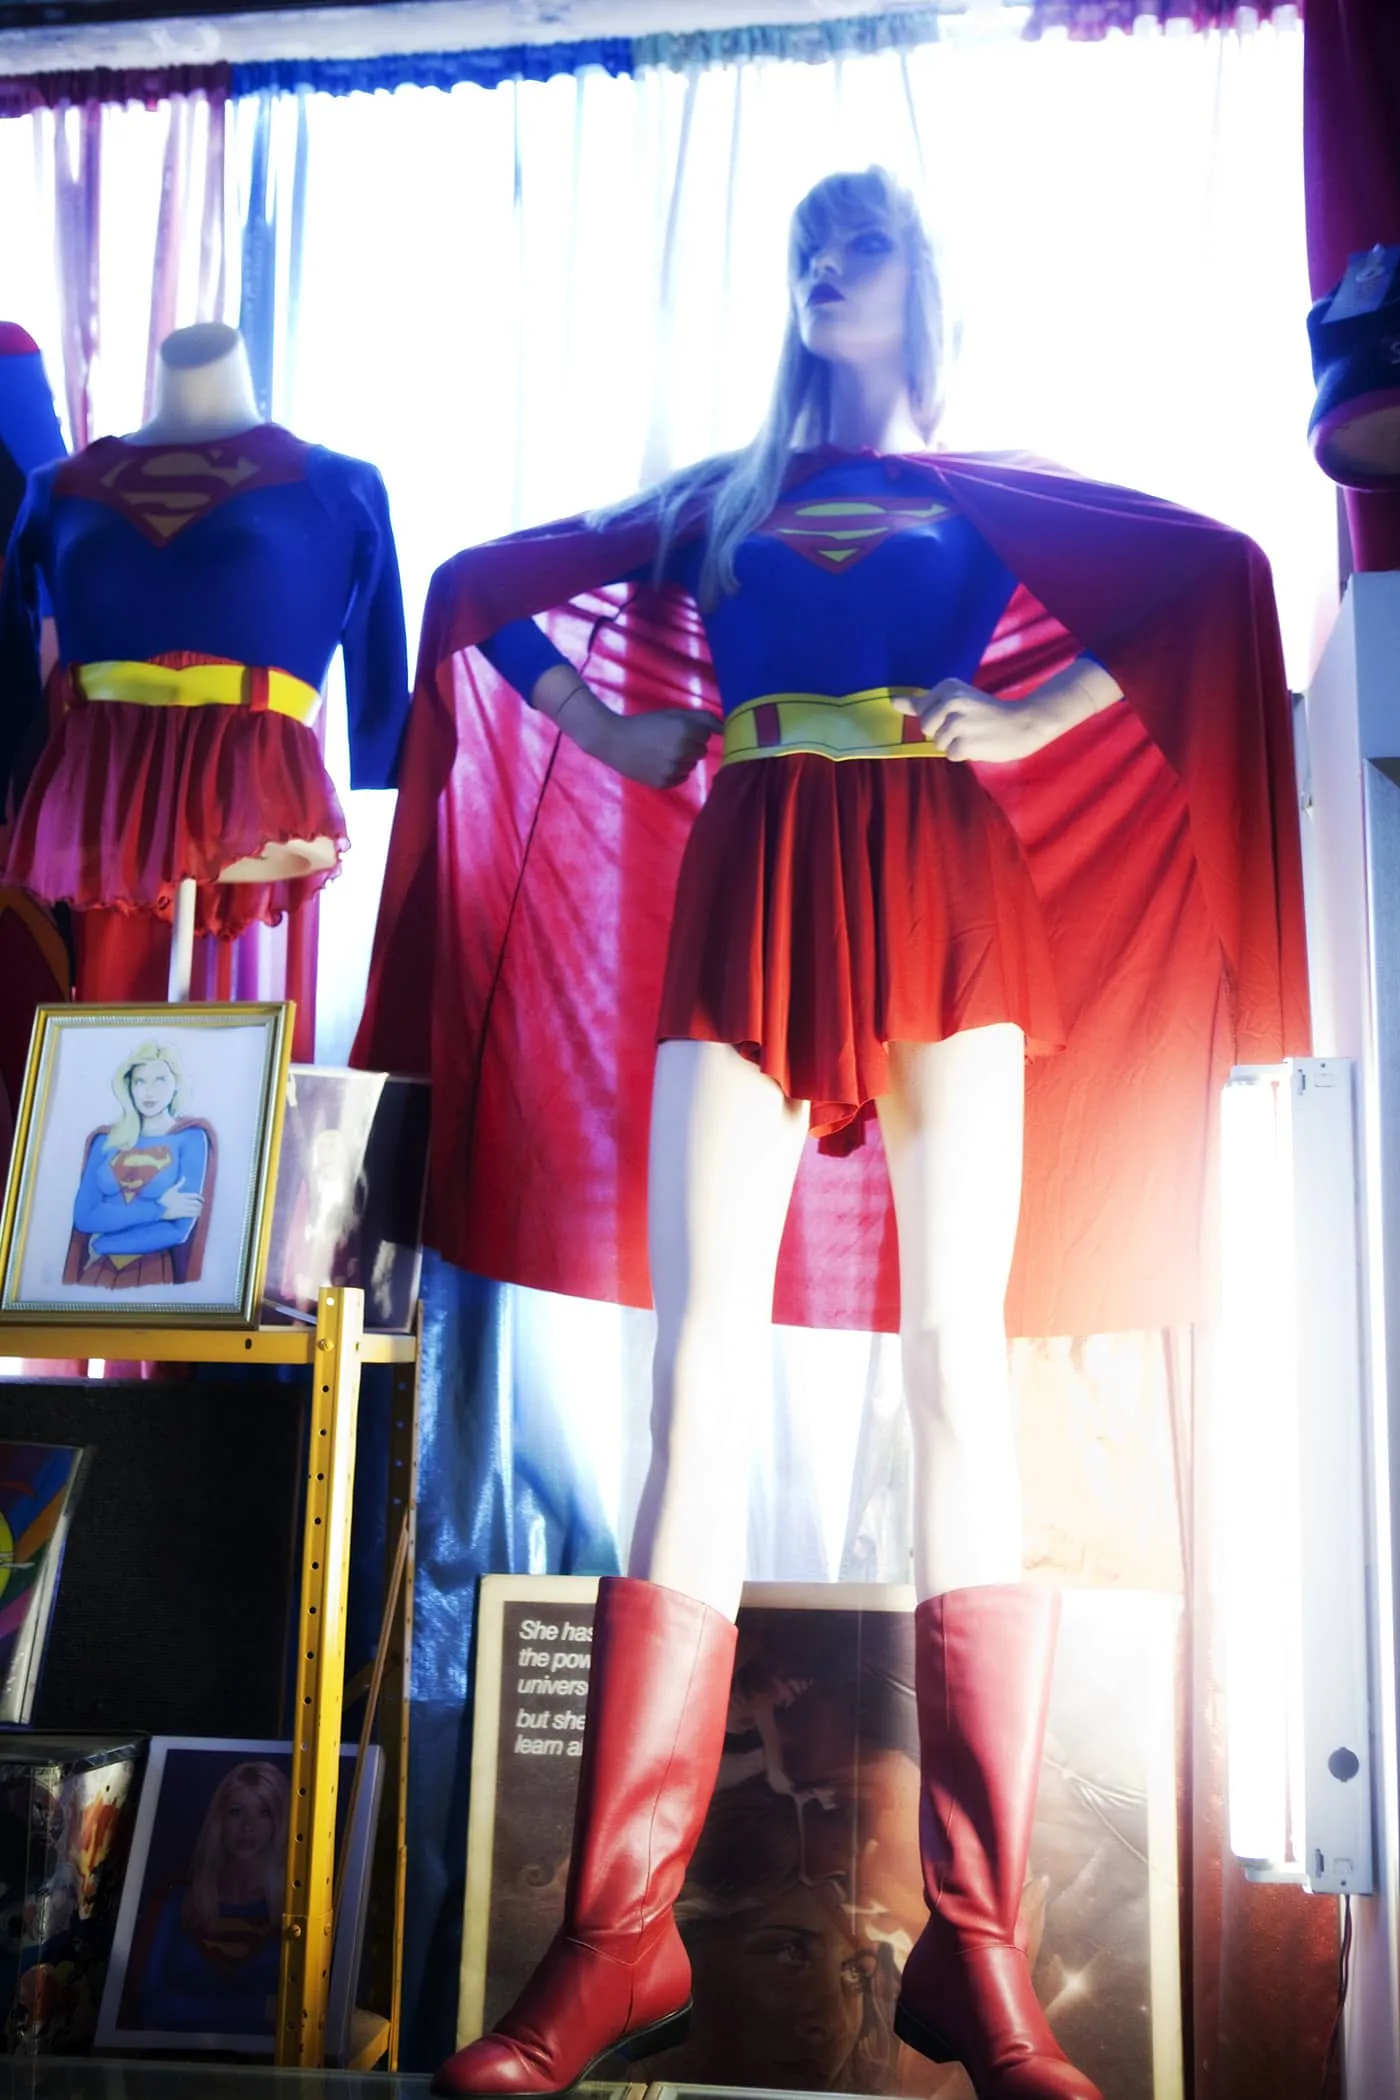 Supergirl costume at the Super Museum in Metropolis, Illinois.